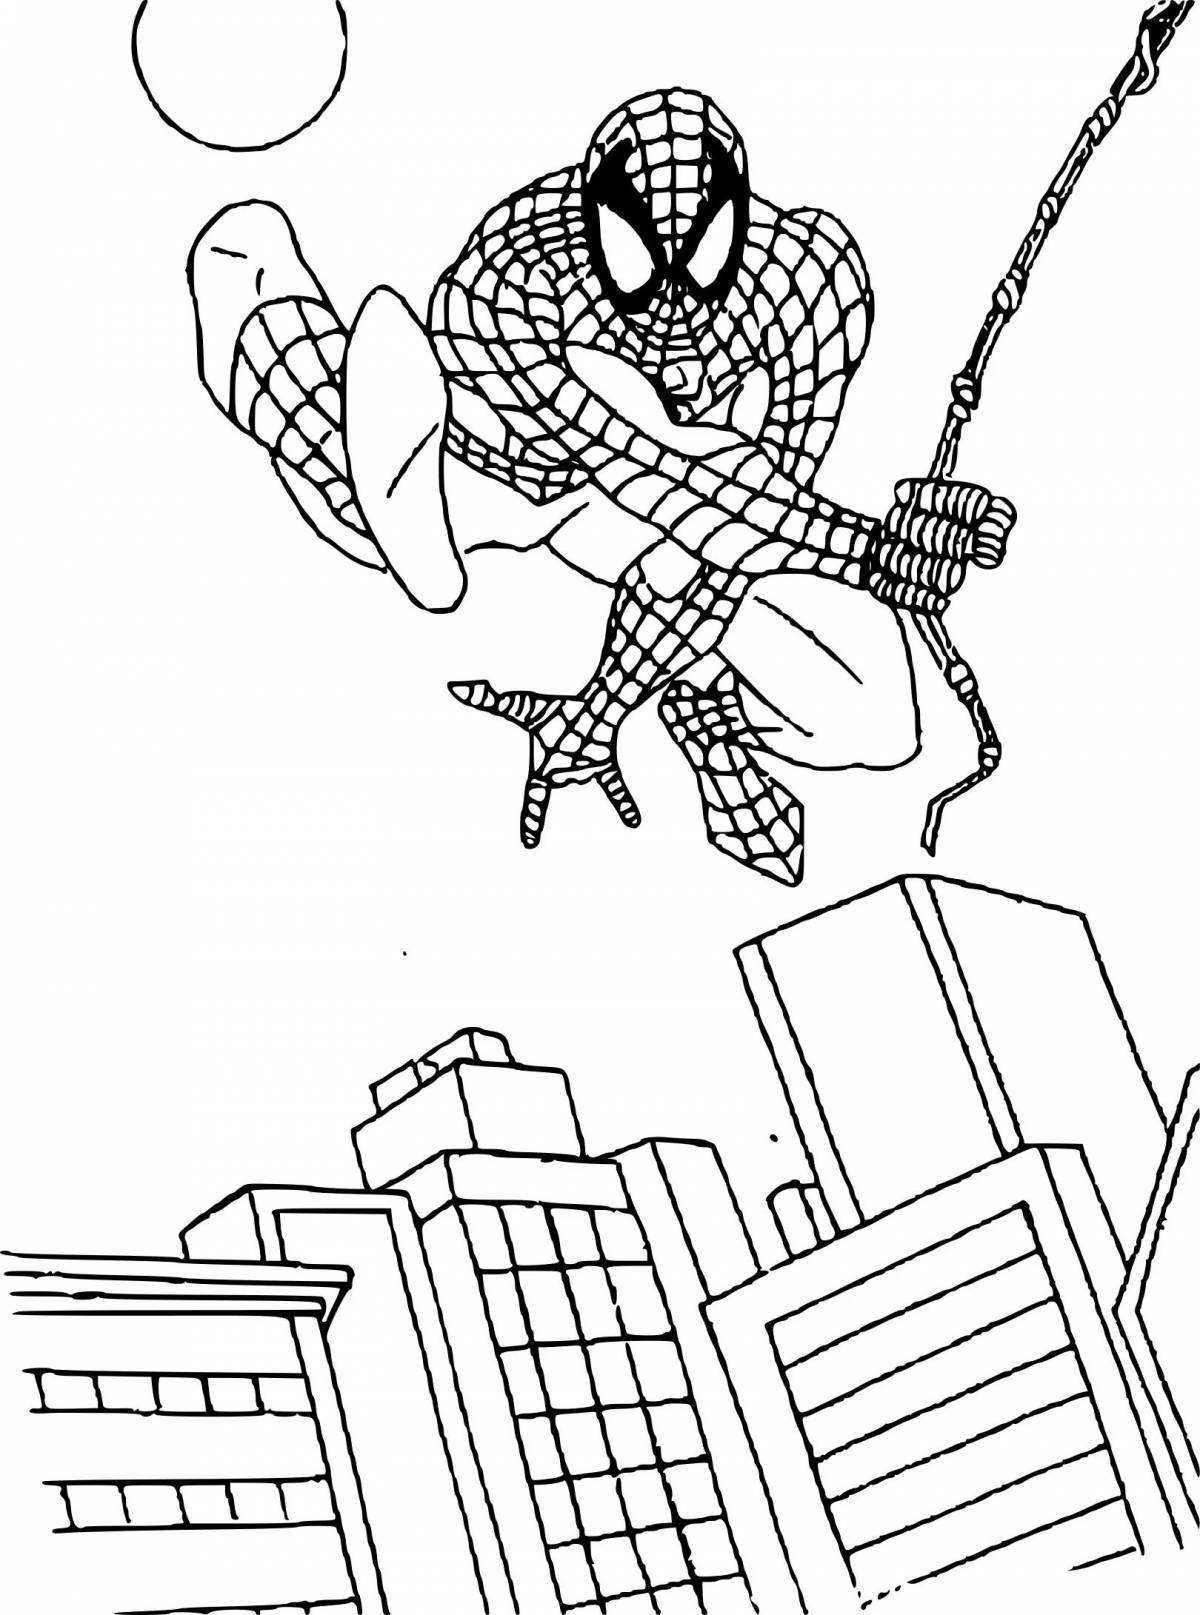 Юмористический комикс человек-паук раскраска